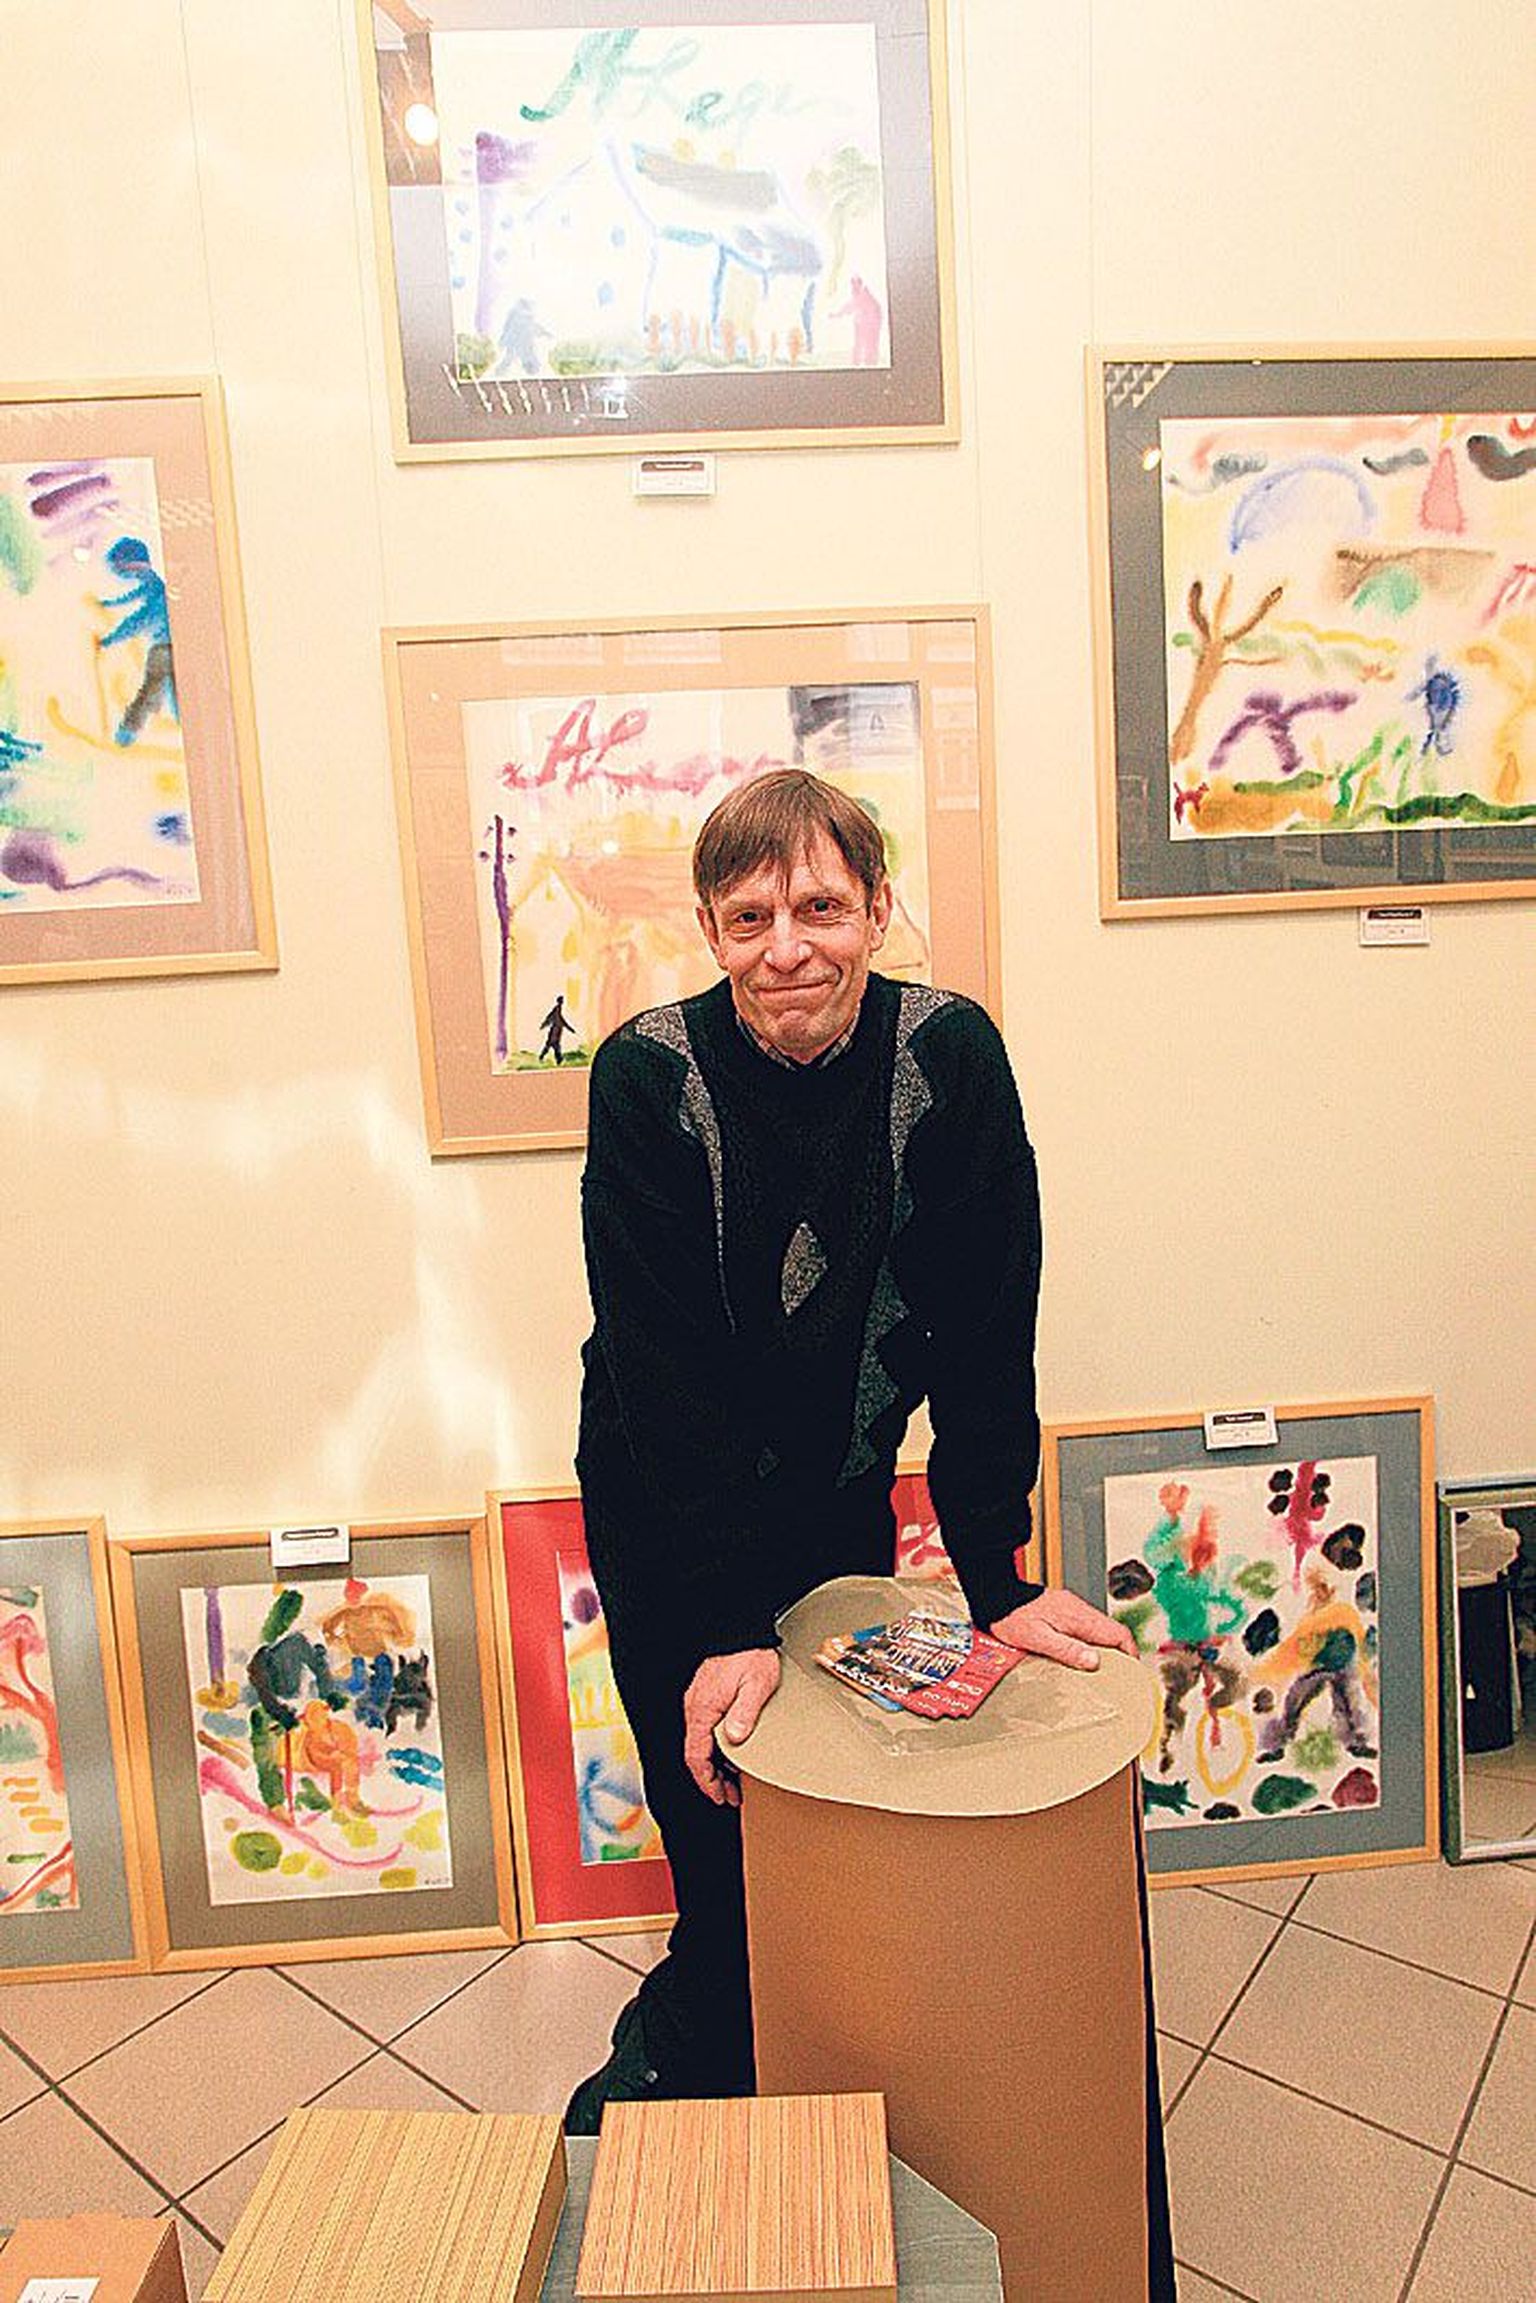 Kunstnik Ago Teedema avas näituse
«Paabulinn» Gildi galeriis
11. jaanuaril. Vaadata saab seda
10. veebruarini.